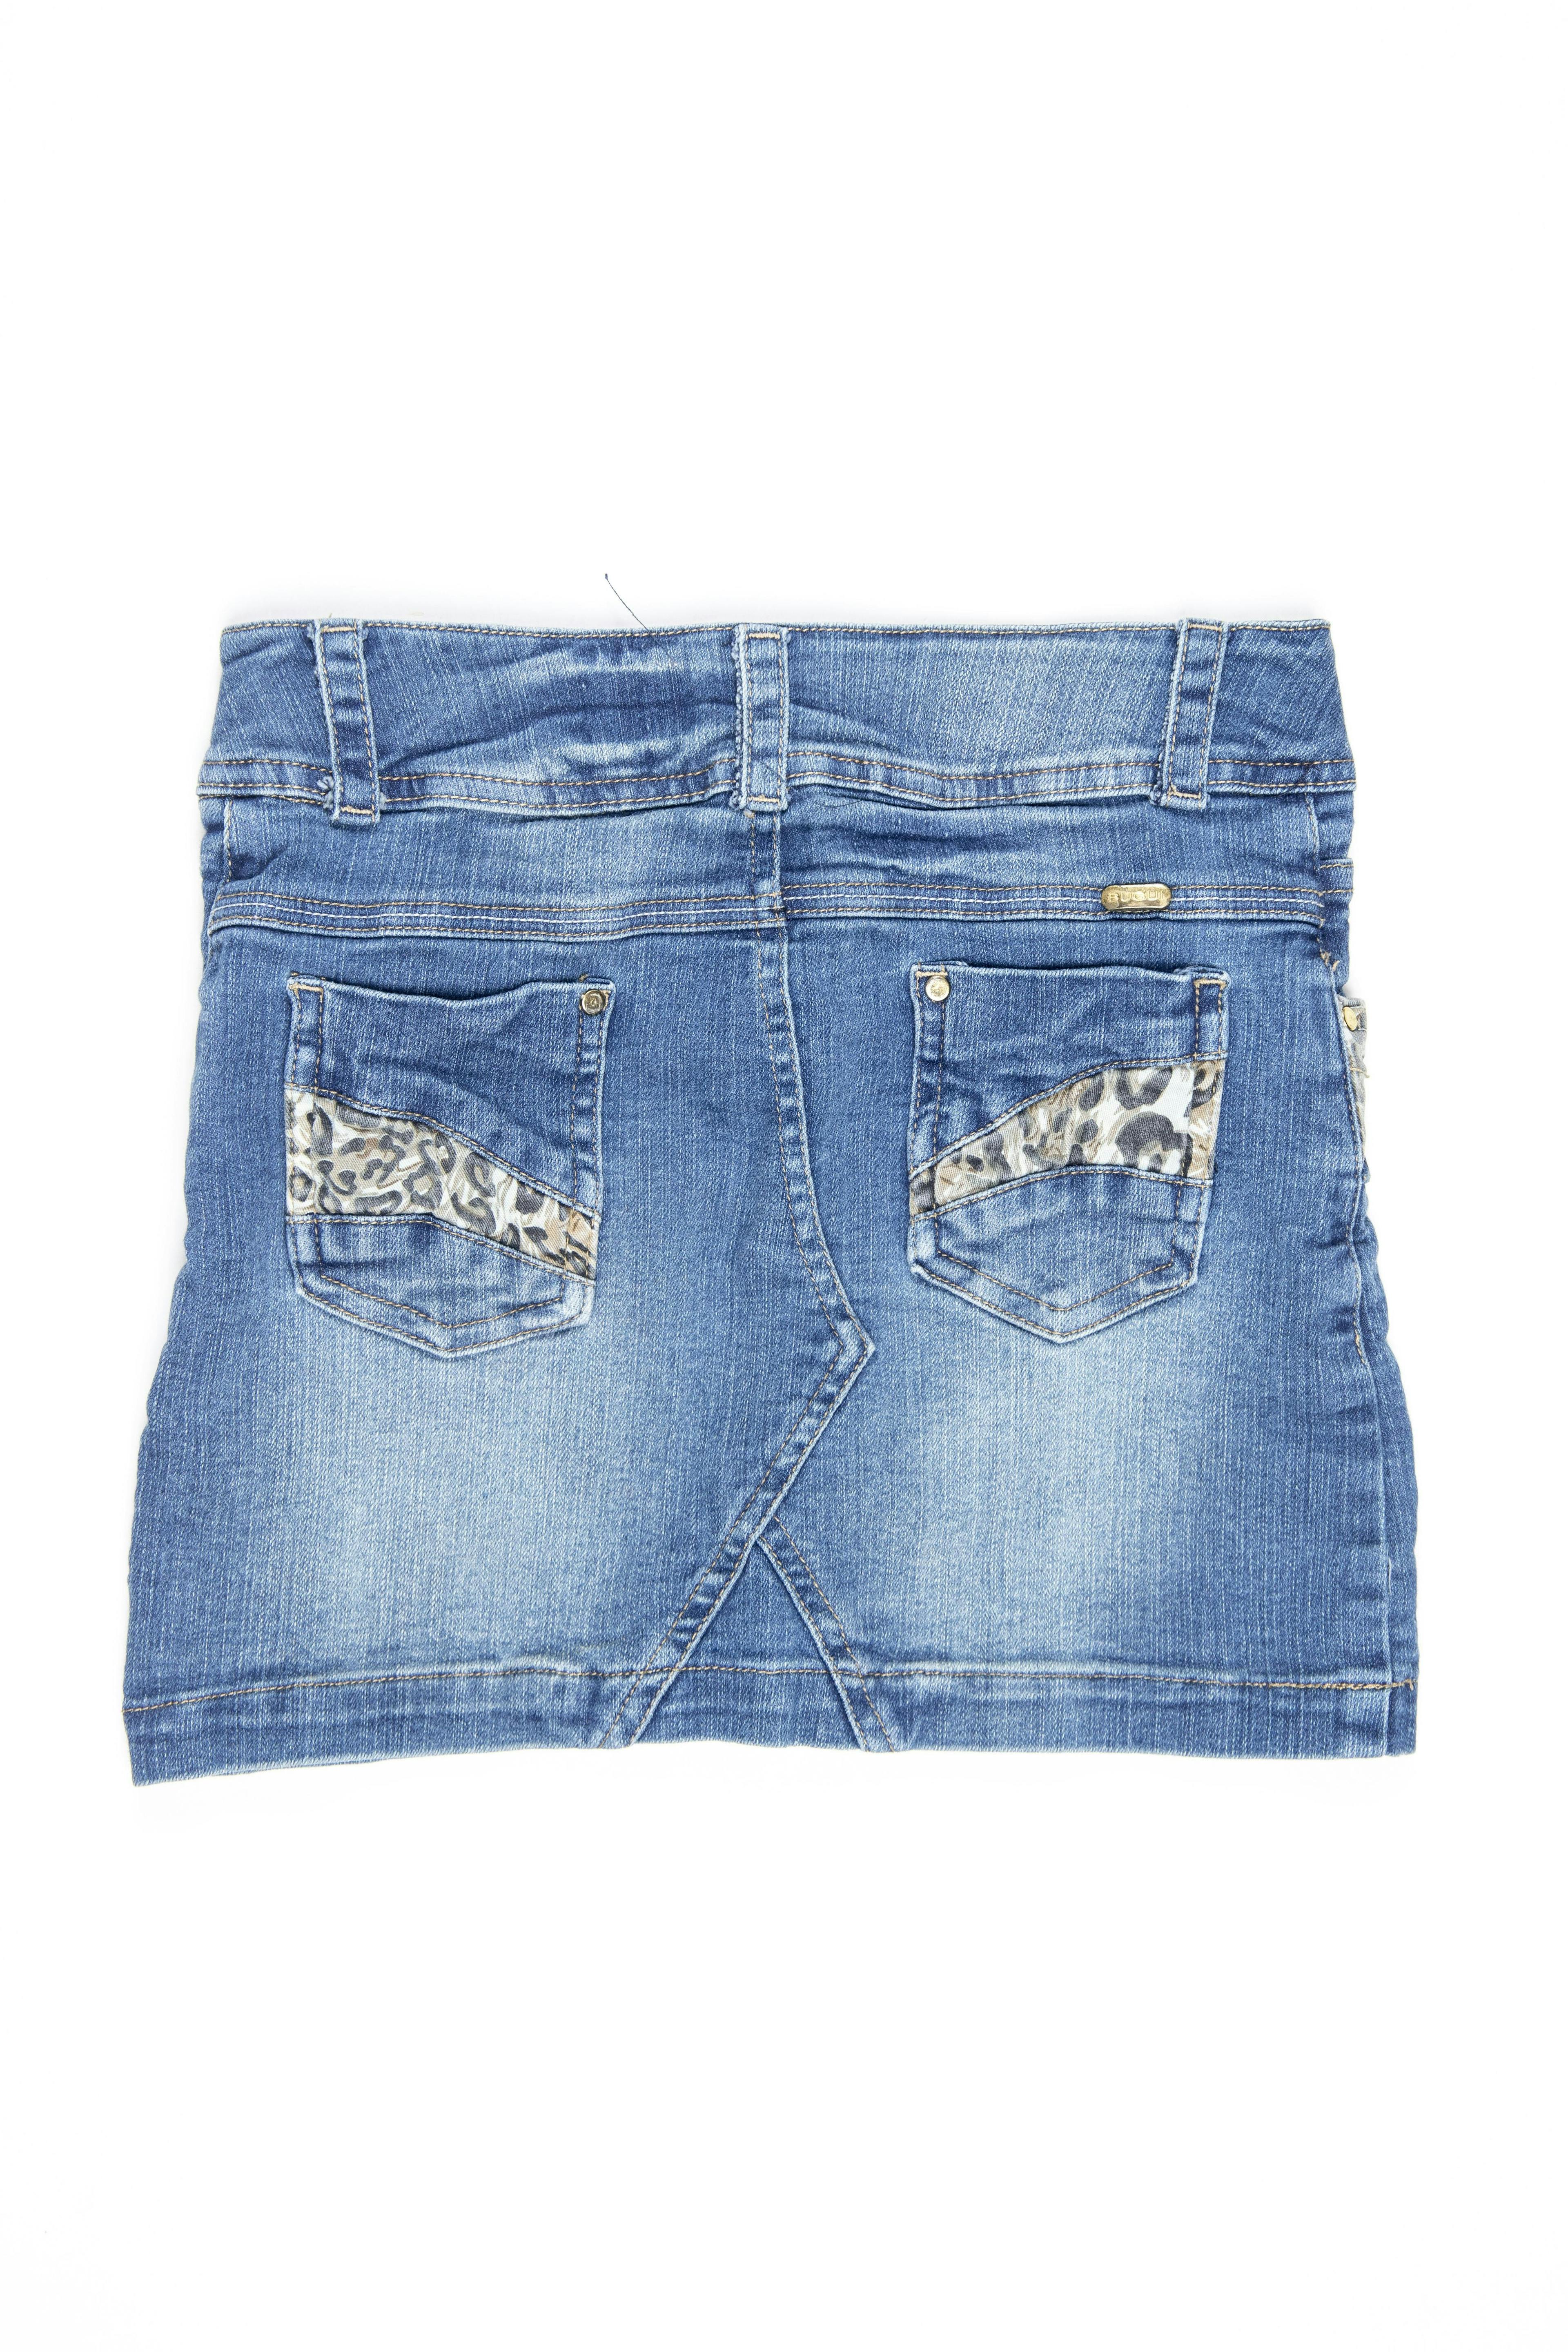 Falda de jean con animal print en bolsillos. Cintura regulable - Bugui